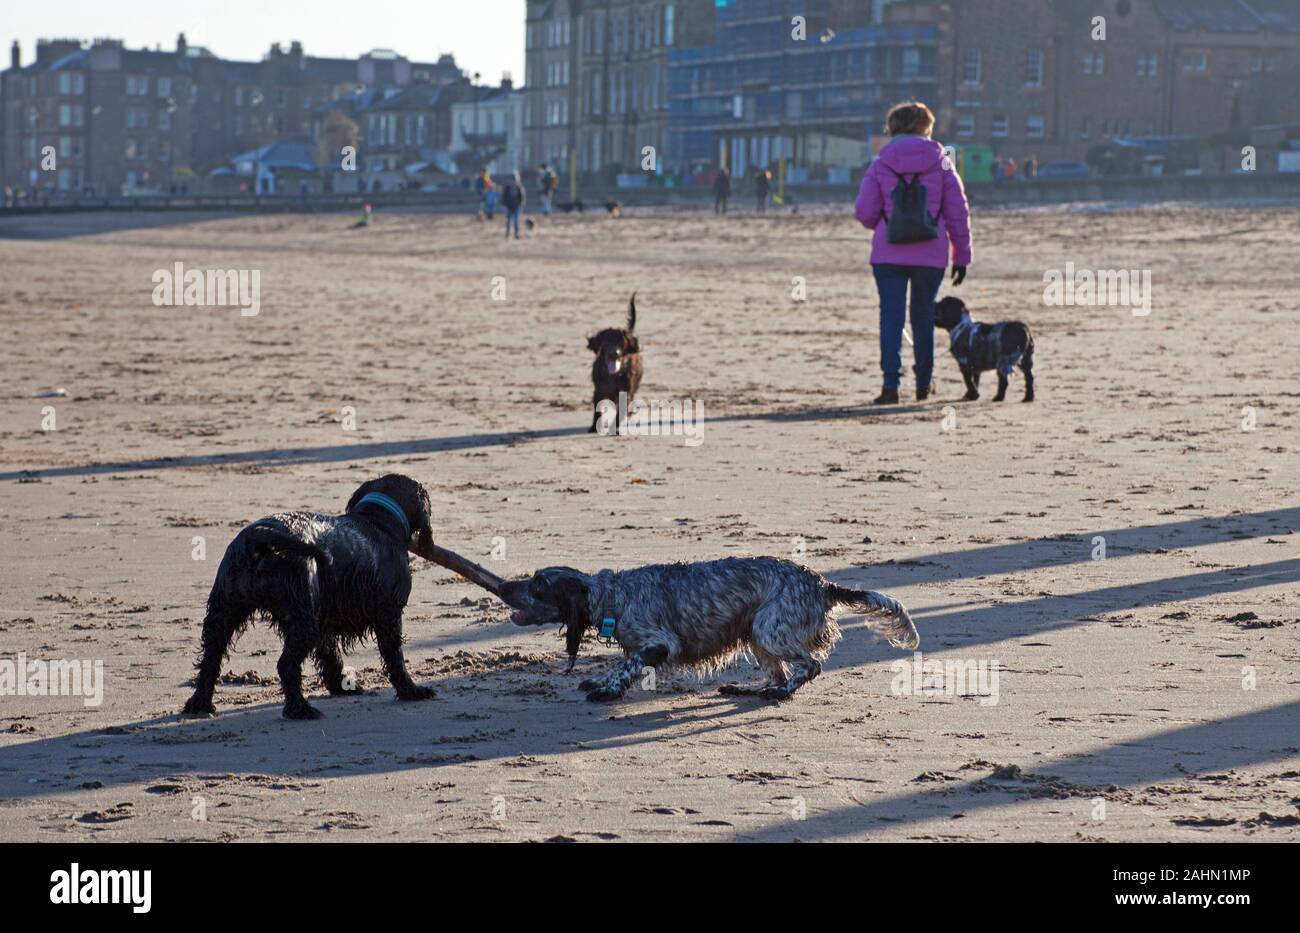 La plage de Portobello, Édimbourg, Écosse, Royaume-Uni. Le 31 décembre 2019. Après une nuit glaciale une température de -1C avec plein soleil n'a pas pris la peine ces visiteurs sur ce dernier jour de 2019, les chiens appréciant l'exercice. Banque D'Images